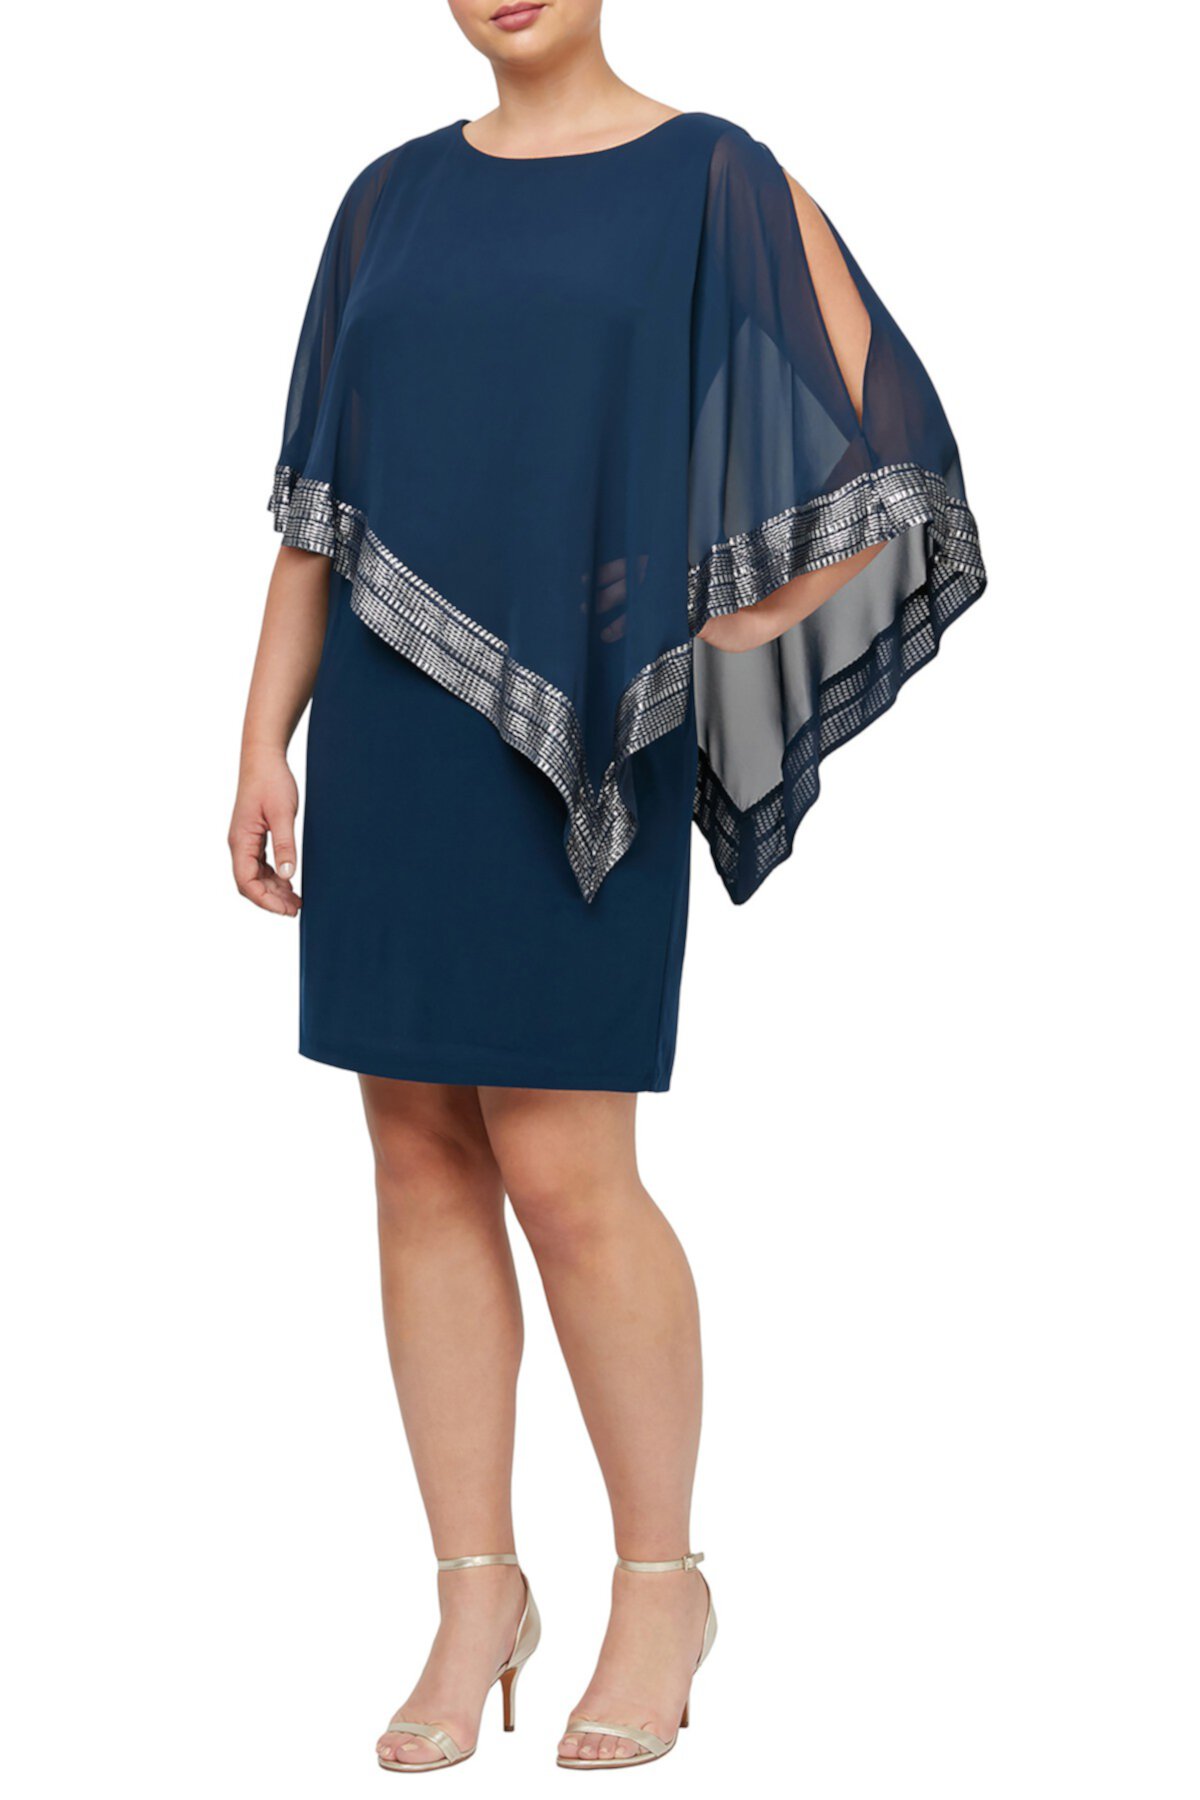 Асимметричное поповер-платье с отделкой фольгой (большие размеры) SLNY